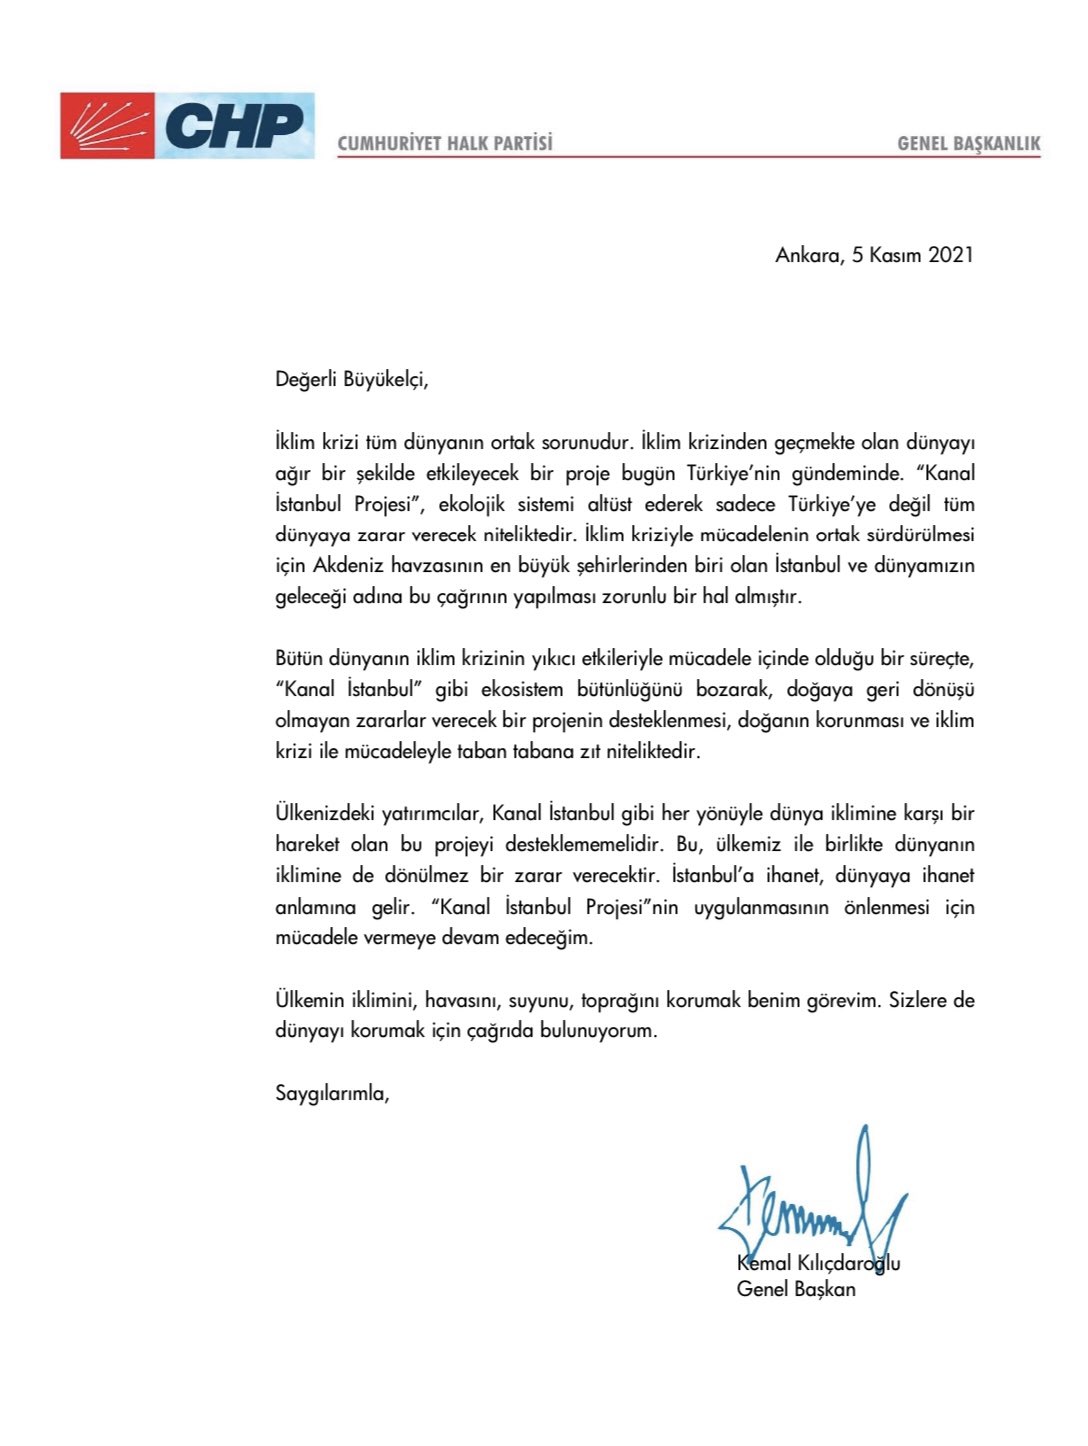 Kılıçdaroğlu'ndan büyükelçilere Kanal İstanbul mektubu: Ülkelerinizdeki yatırımcılar bu projeyi desteklememeli